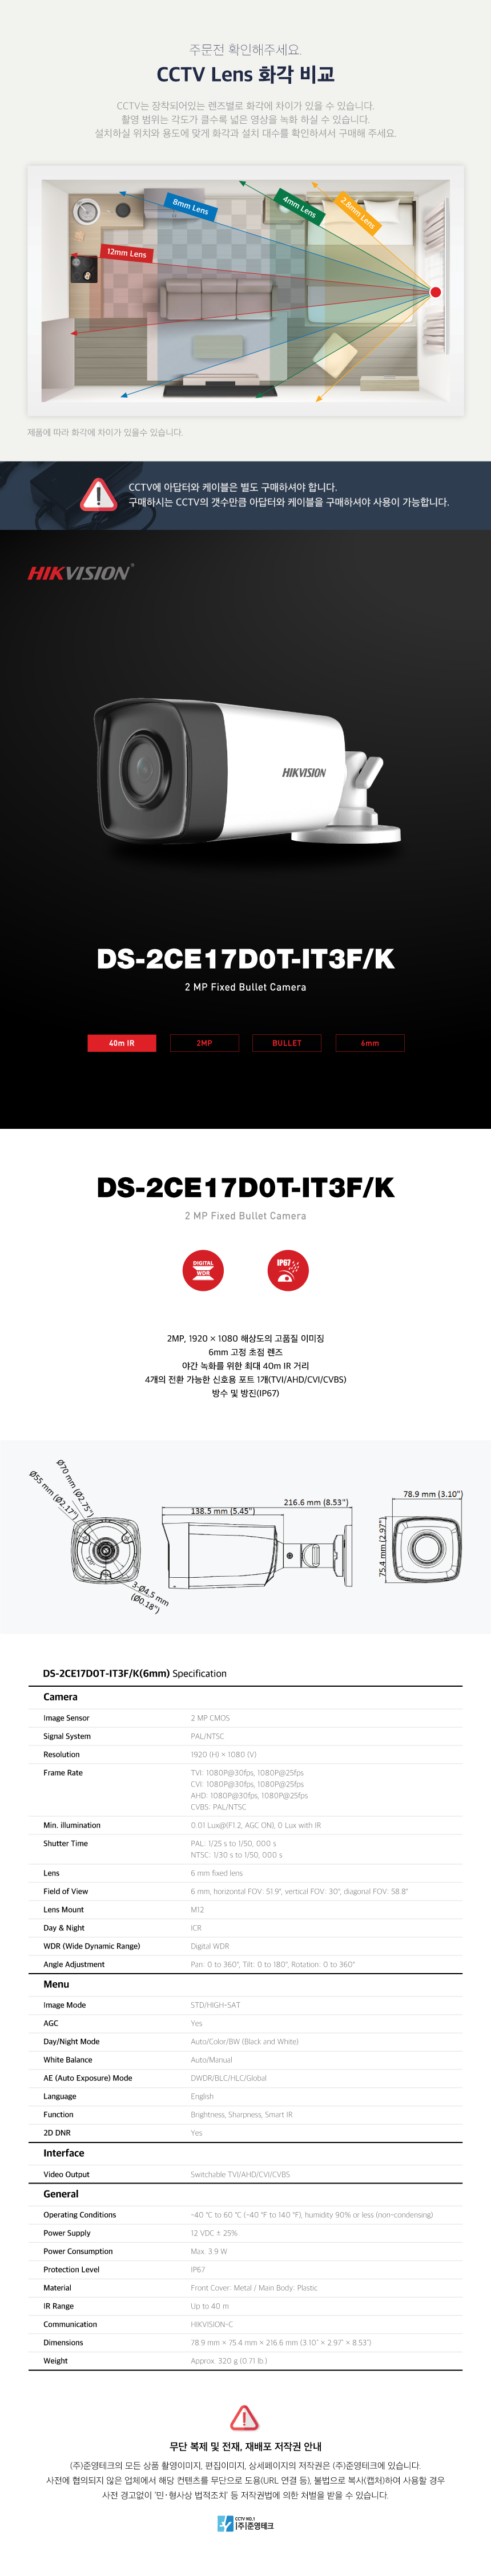 DS-2CE17D0T-IT3F_K_6mm_173839_165233.png